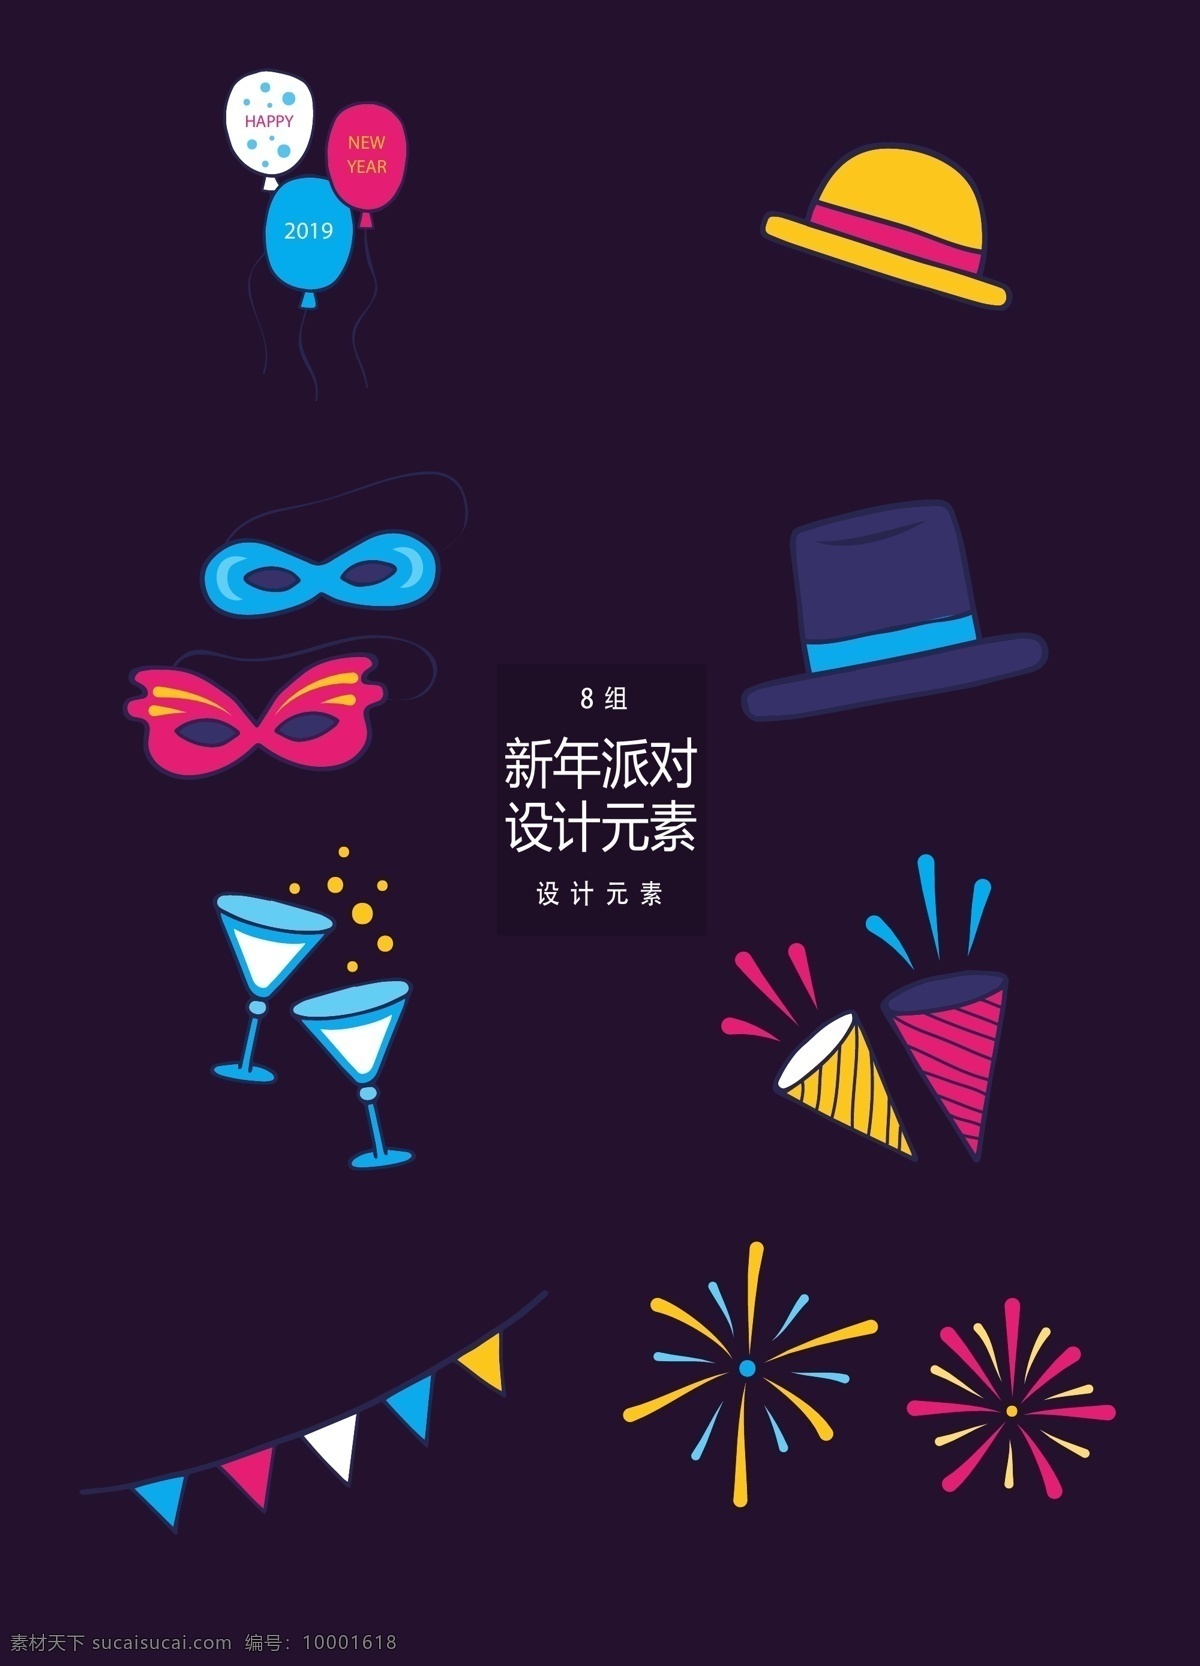 矢量 新年 派对 装饰设计 元素 帽子 气球 烟花 旗帜 新年派对 派对装饰 设计元素 鸡尾酒 香槟